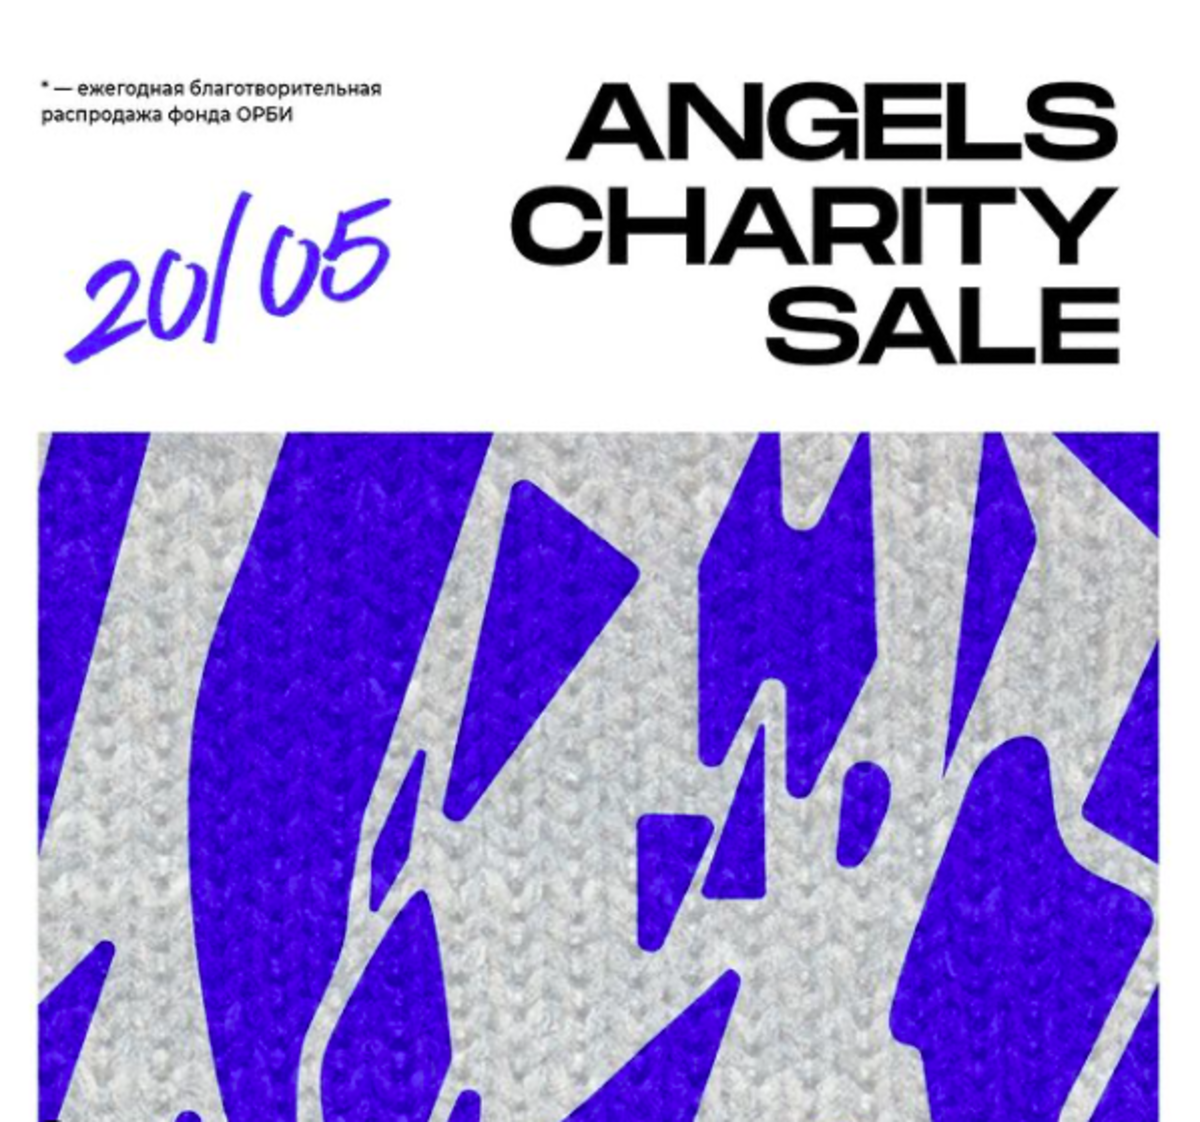 В «Цветном» пройдет благотворительная распродажа Angel’s Charity Sale